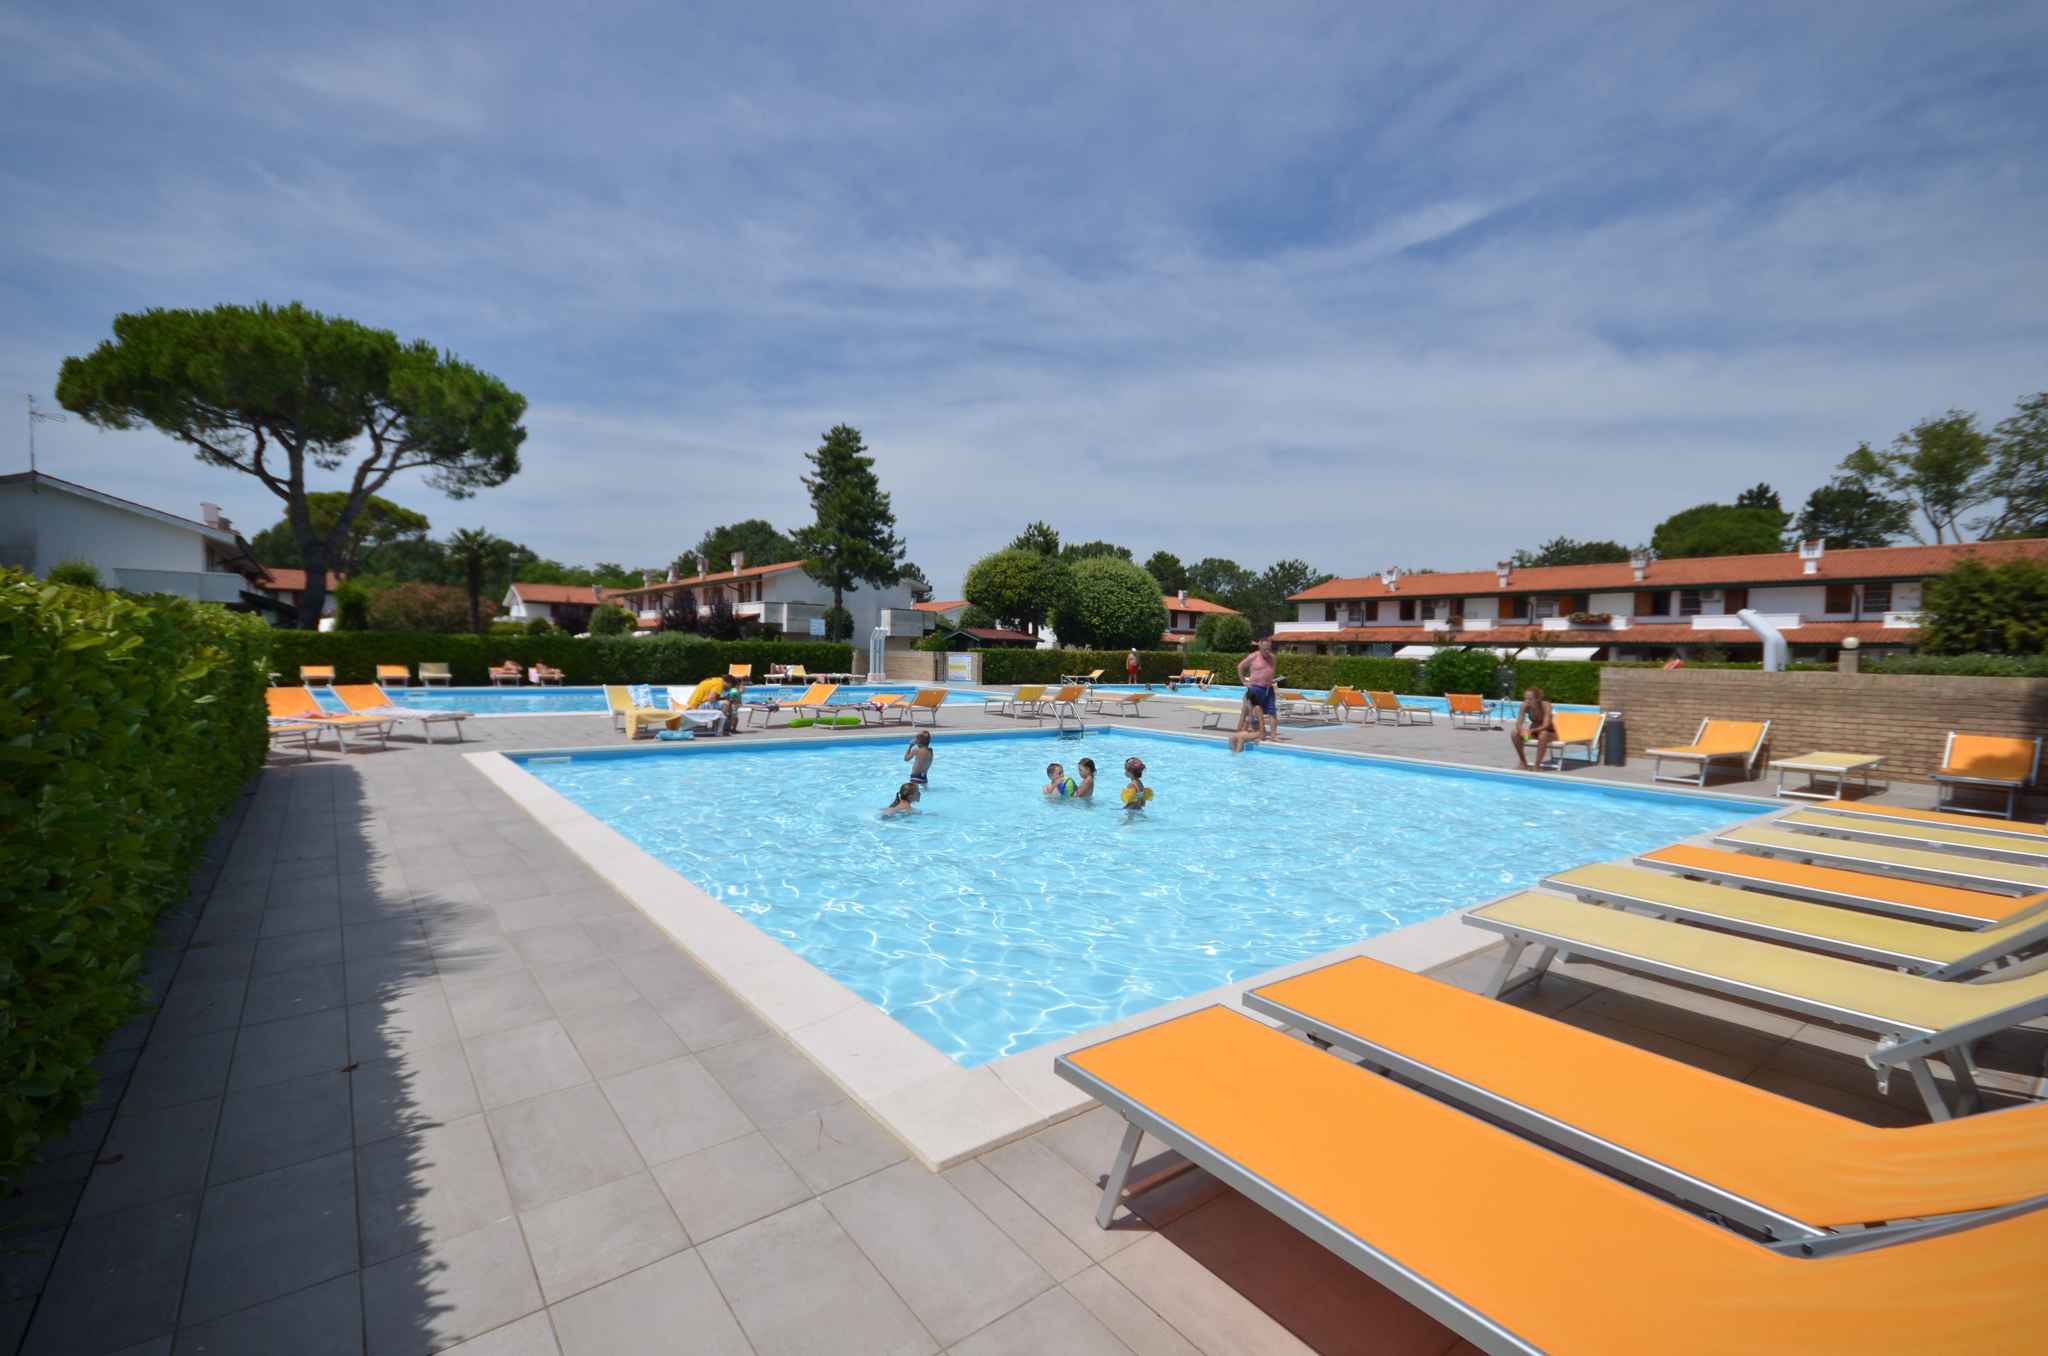 Ferienwohnung in Feriendorf mit Pool und Garten   Venetien